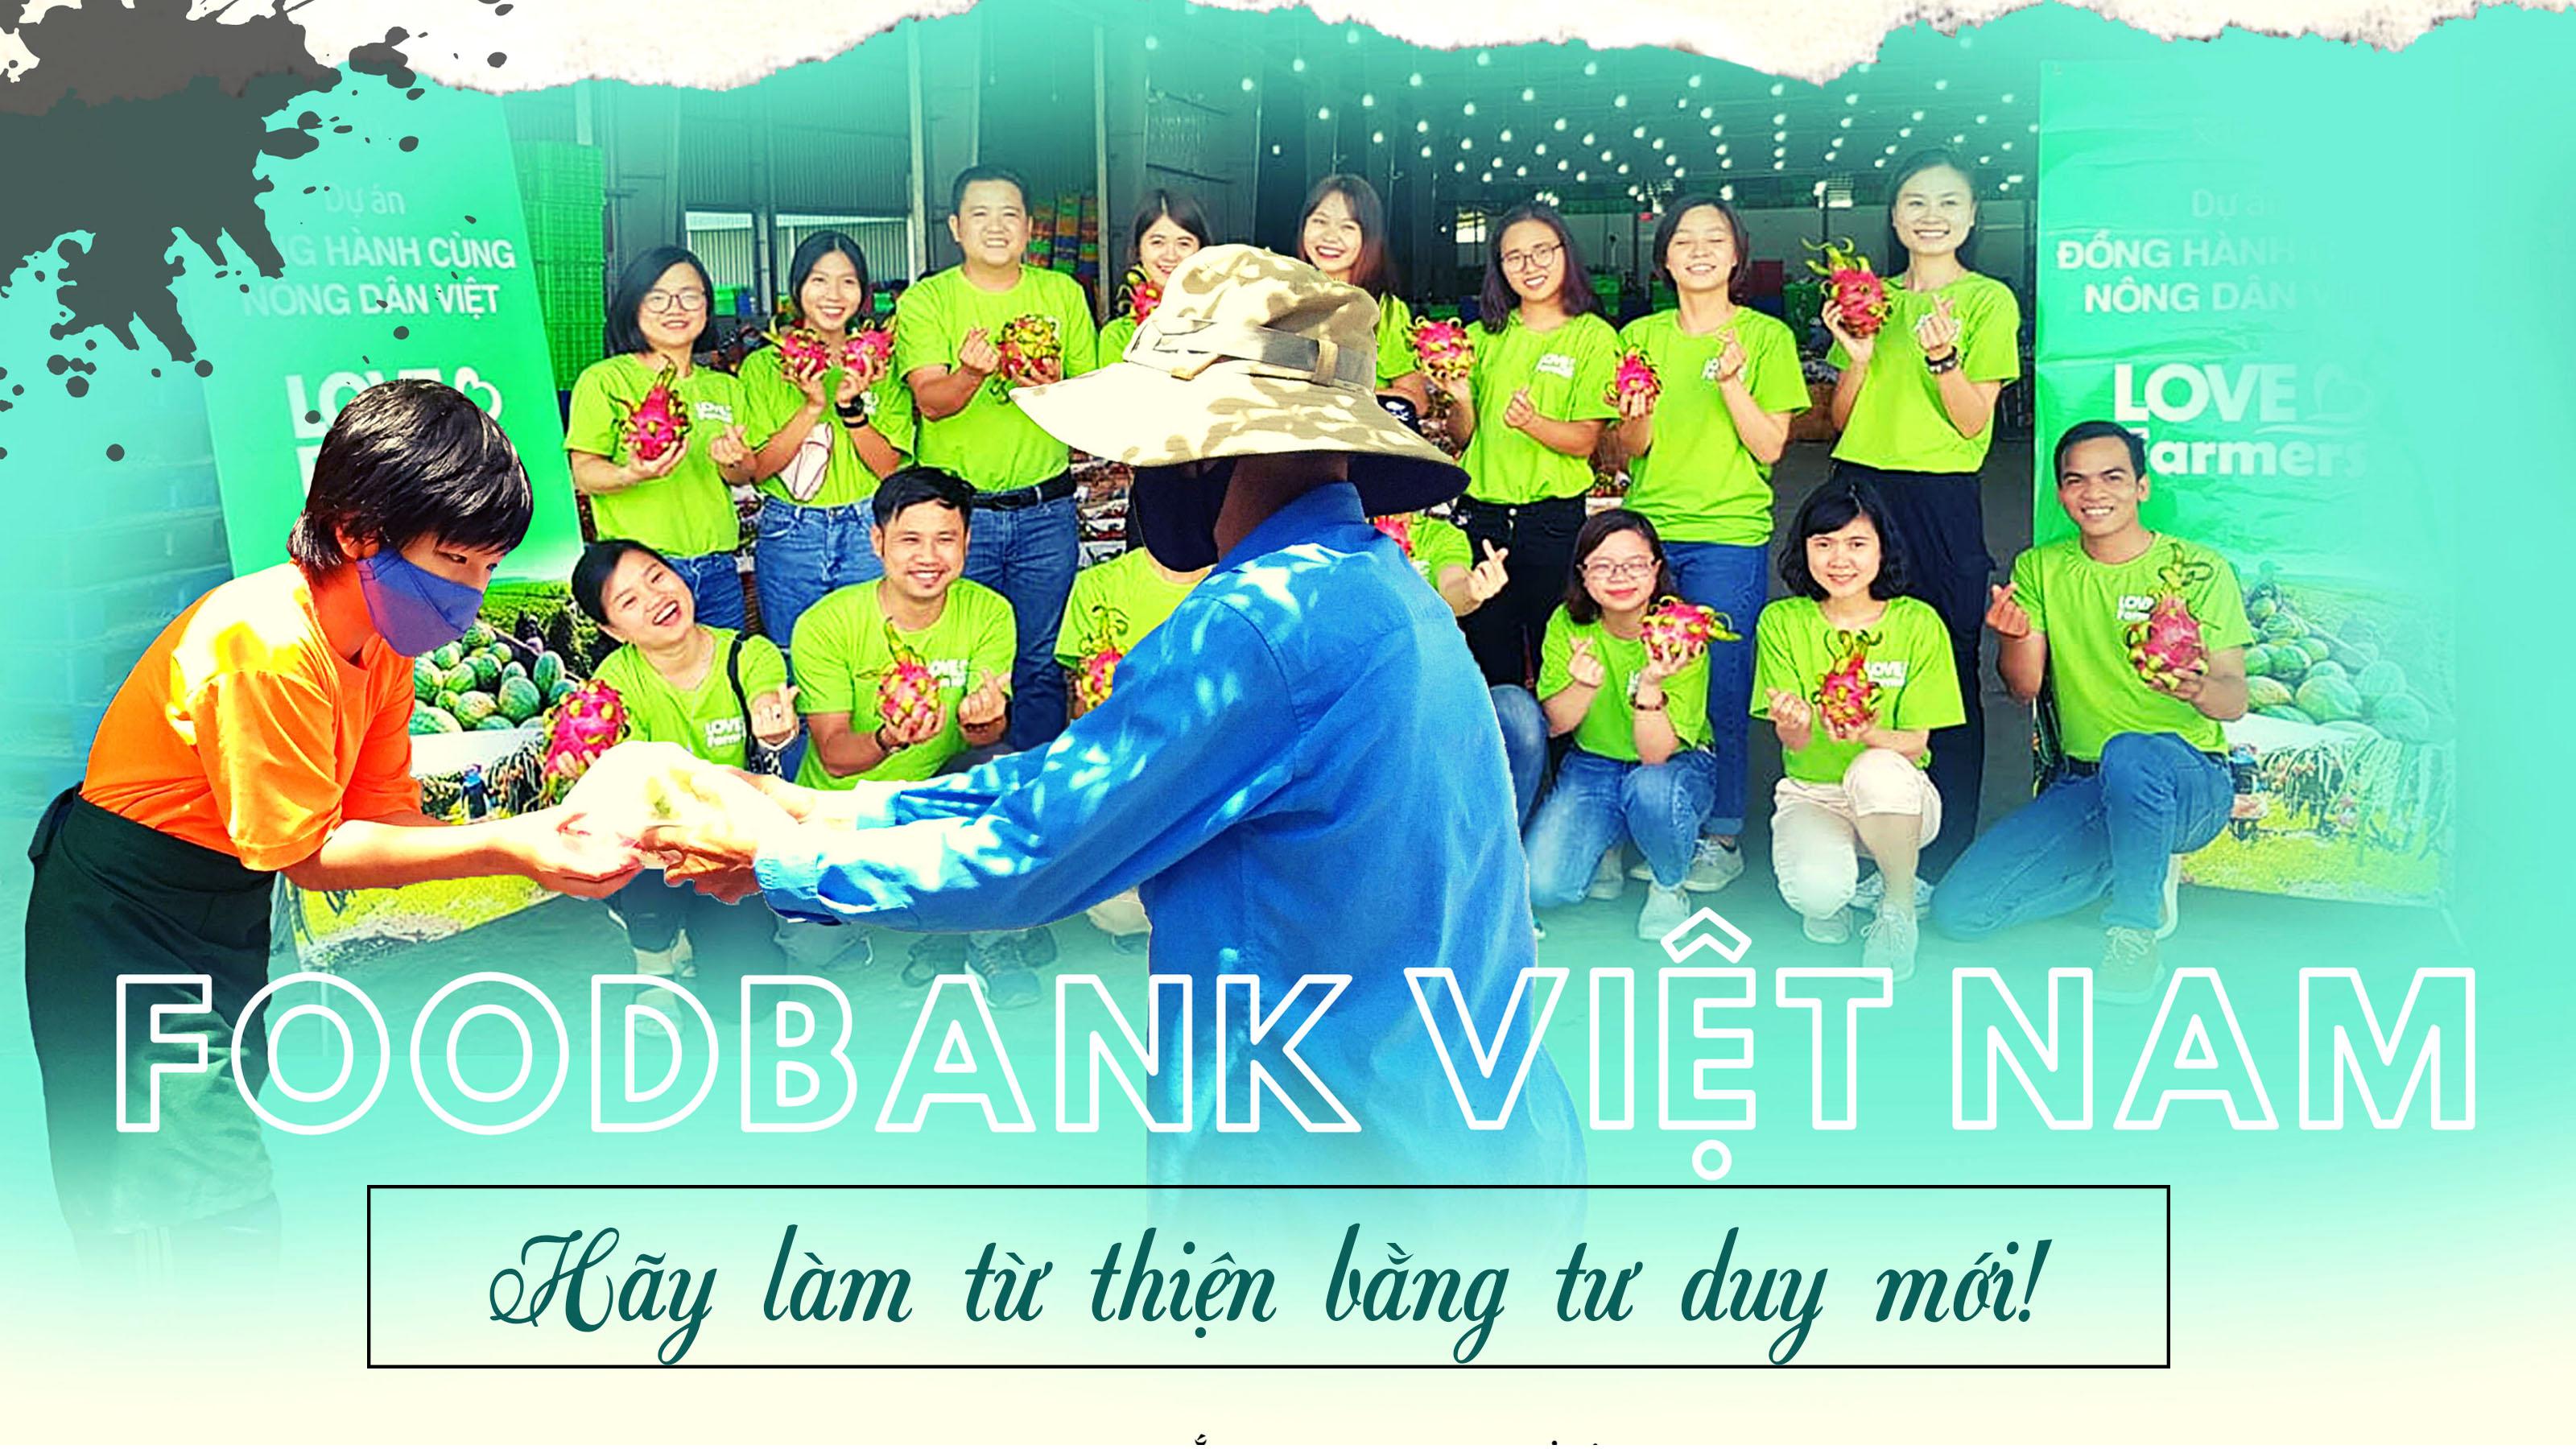 Foodbank Việt Nam: Hãy làm từ thiện bằng tư duy mới!